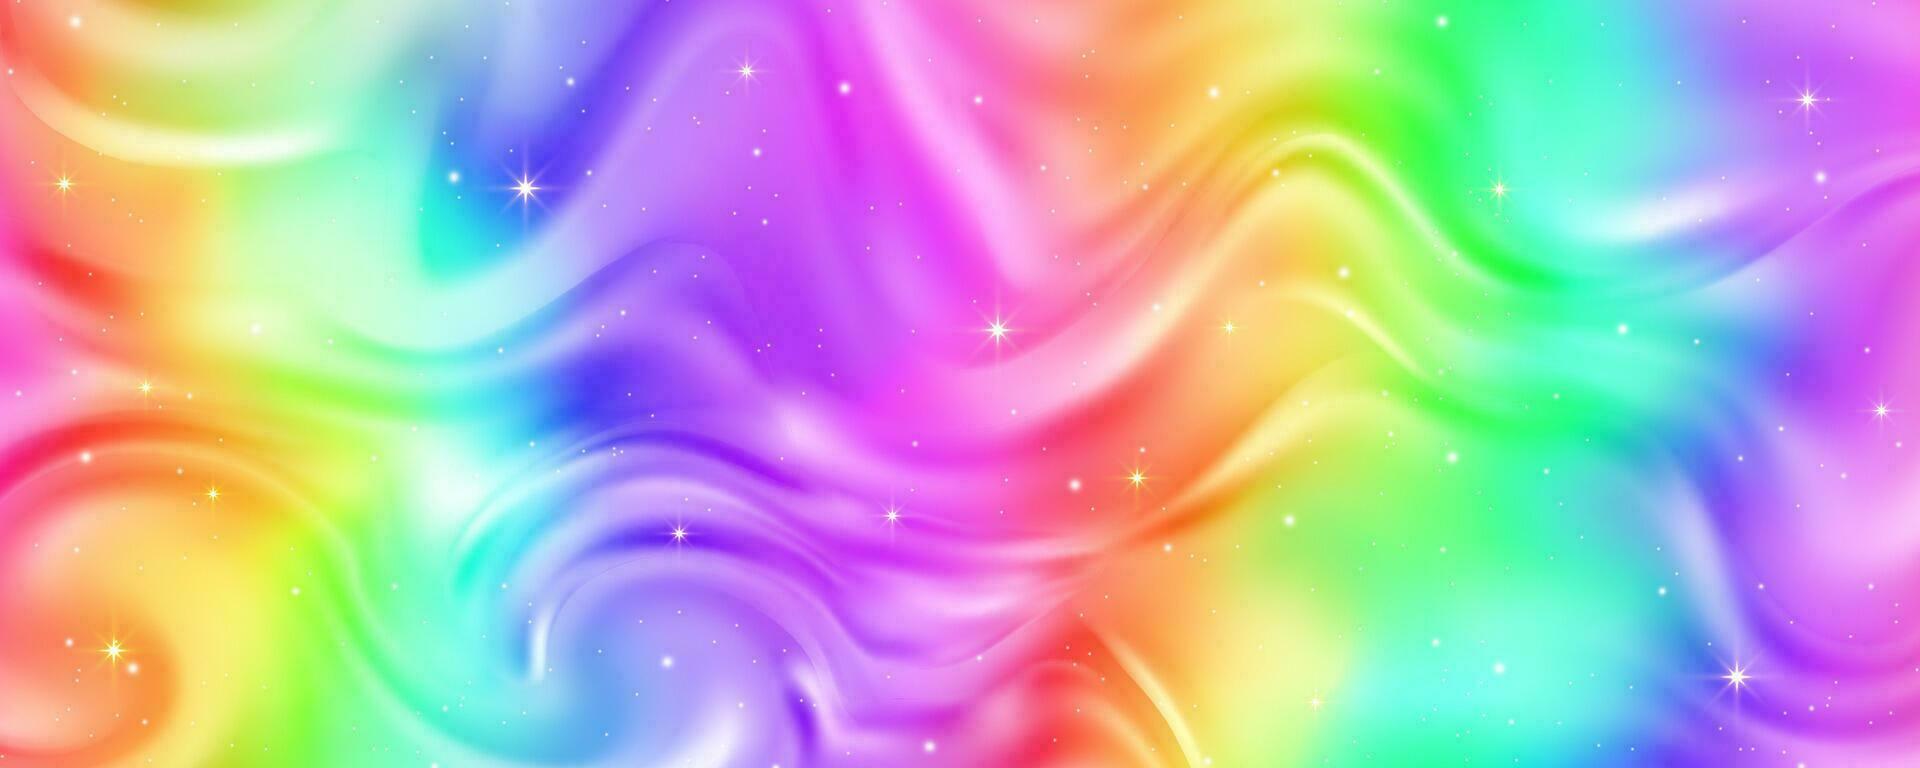 regnbåge bakgrund med vågor av vätska. abstrakt pastell lutning tapet med ljus vibrerande färger och stjärnor. vektor enhörning holografiska bakgrund.